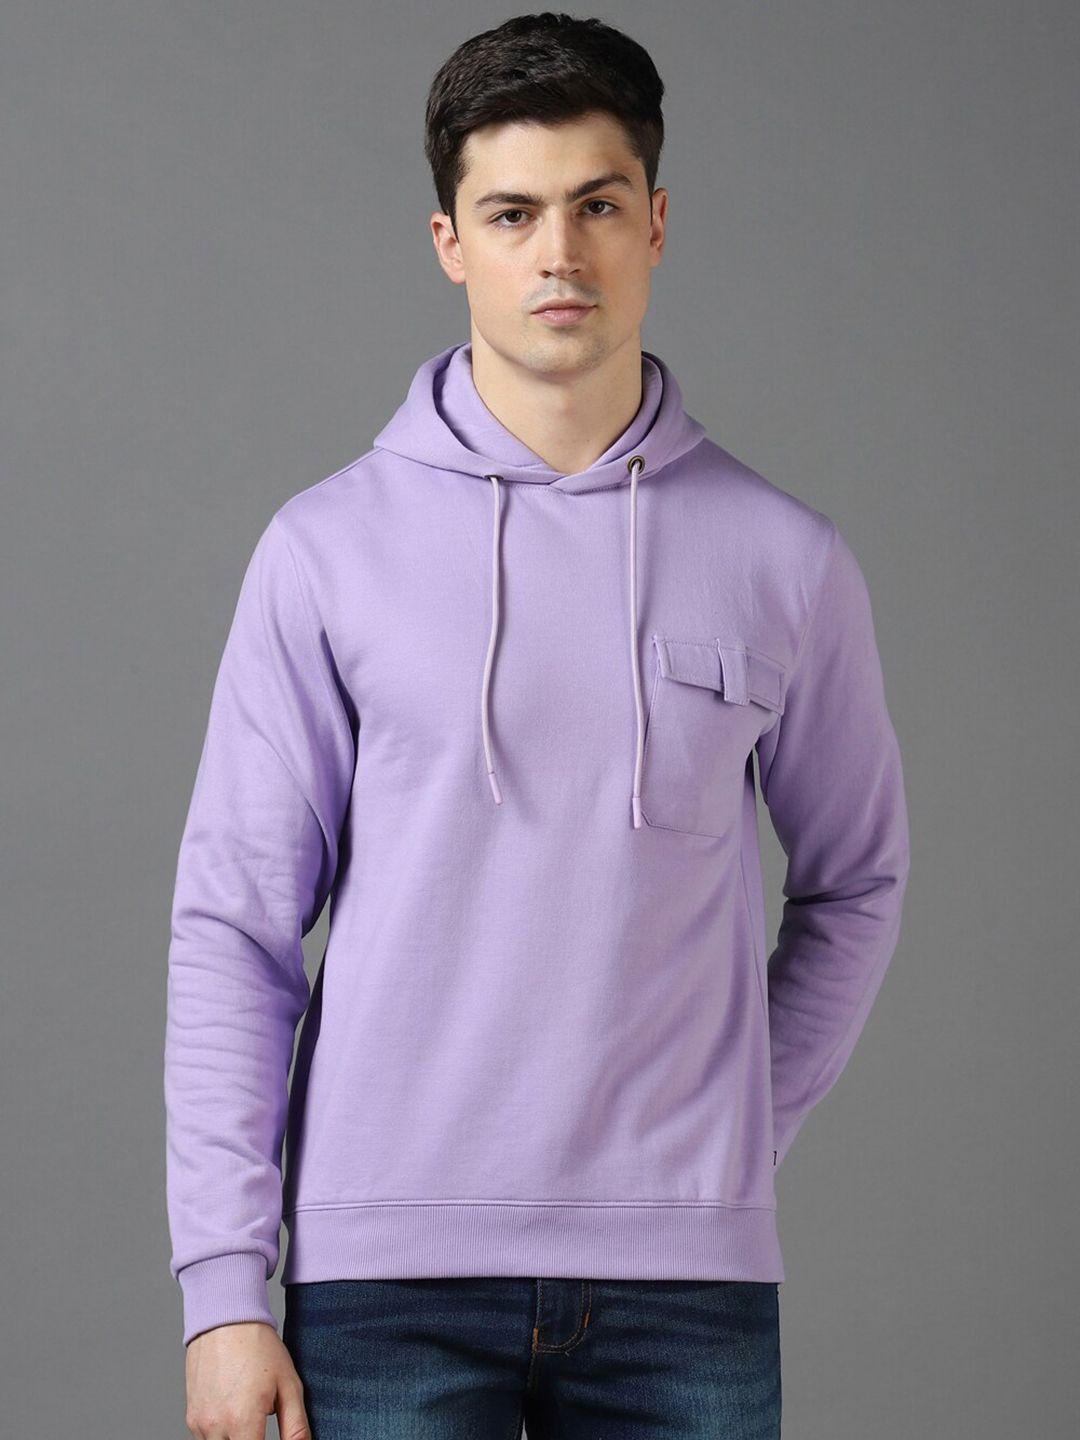 urbano-fashion-hooded-pullover-sweatshirt